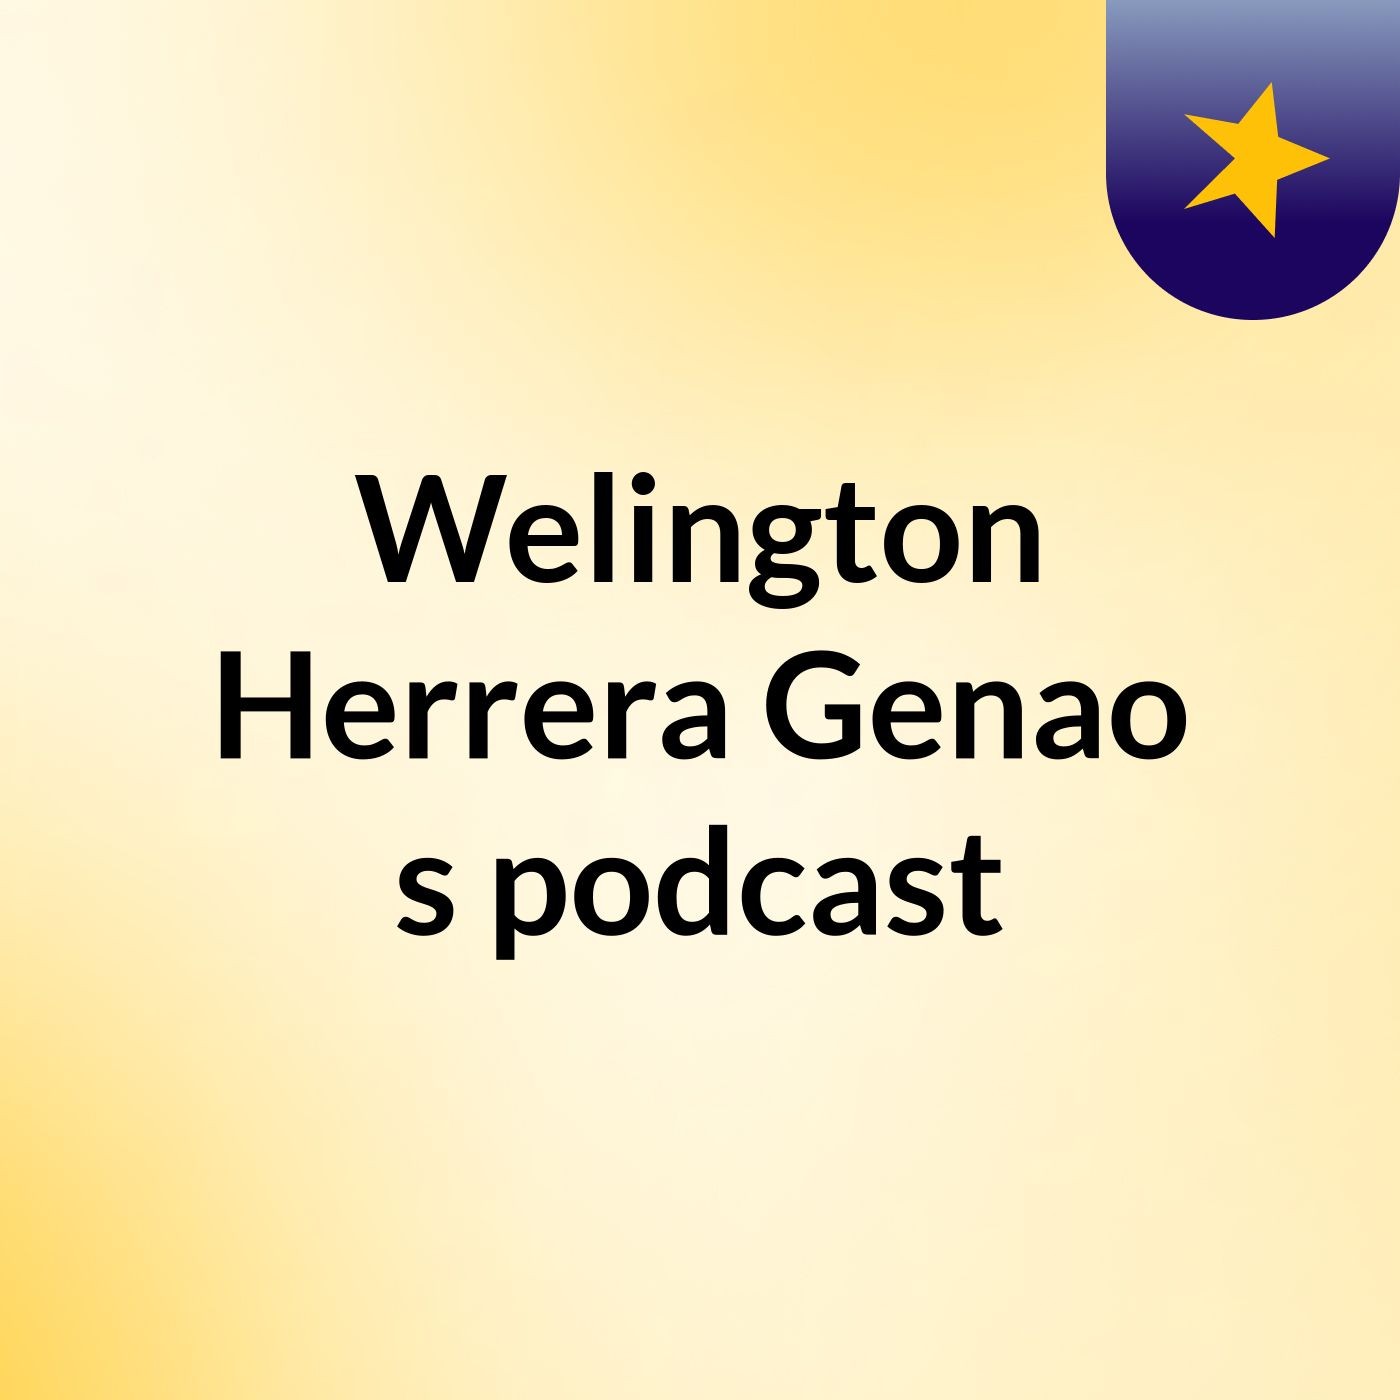 Episode 4 - Welington Herrera Genao's podcast